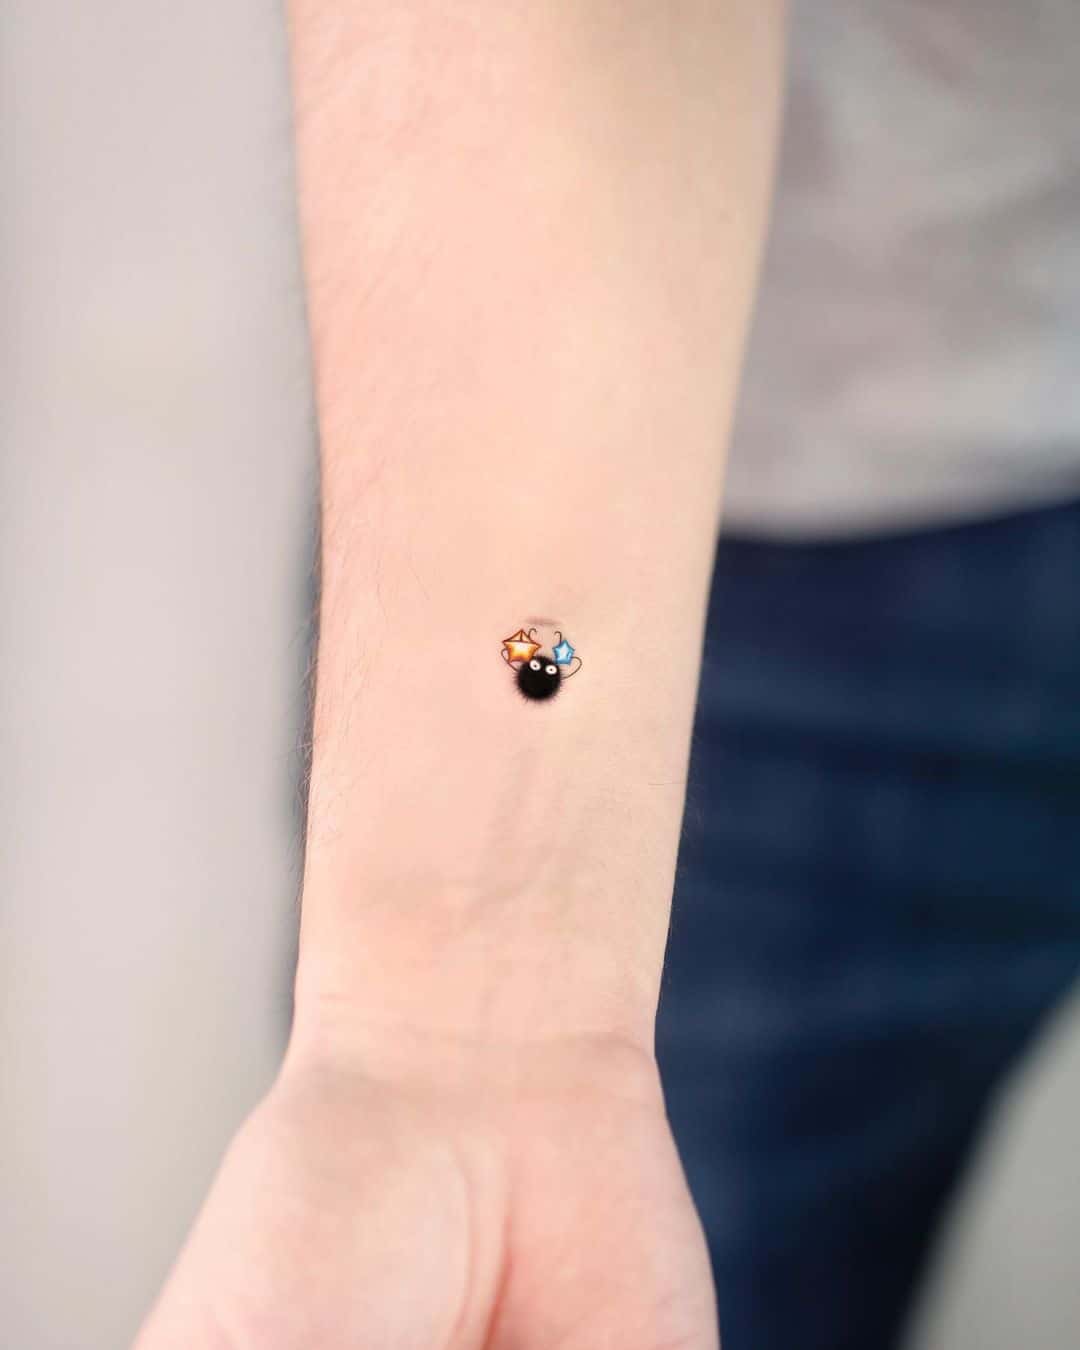 Small star tattoo by tattooist toma